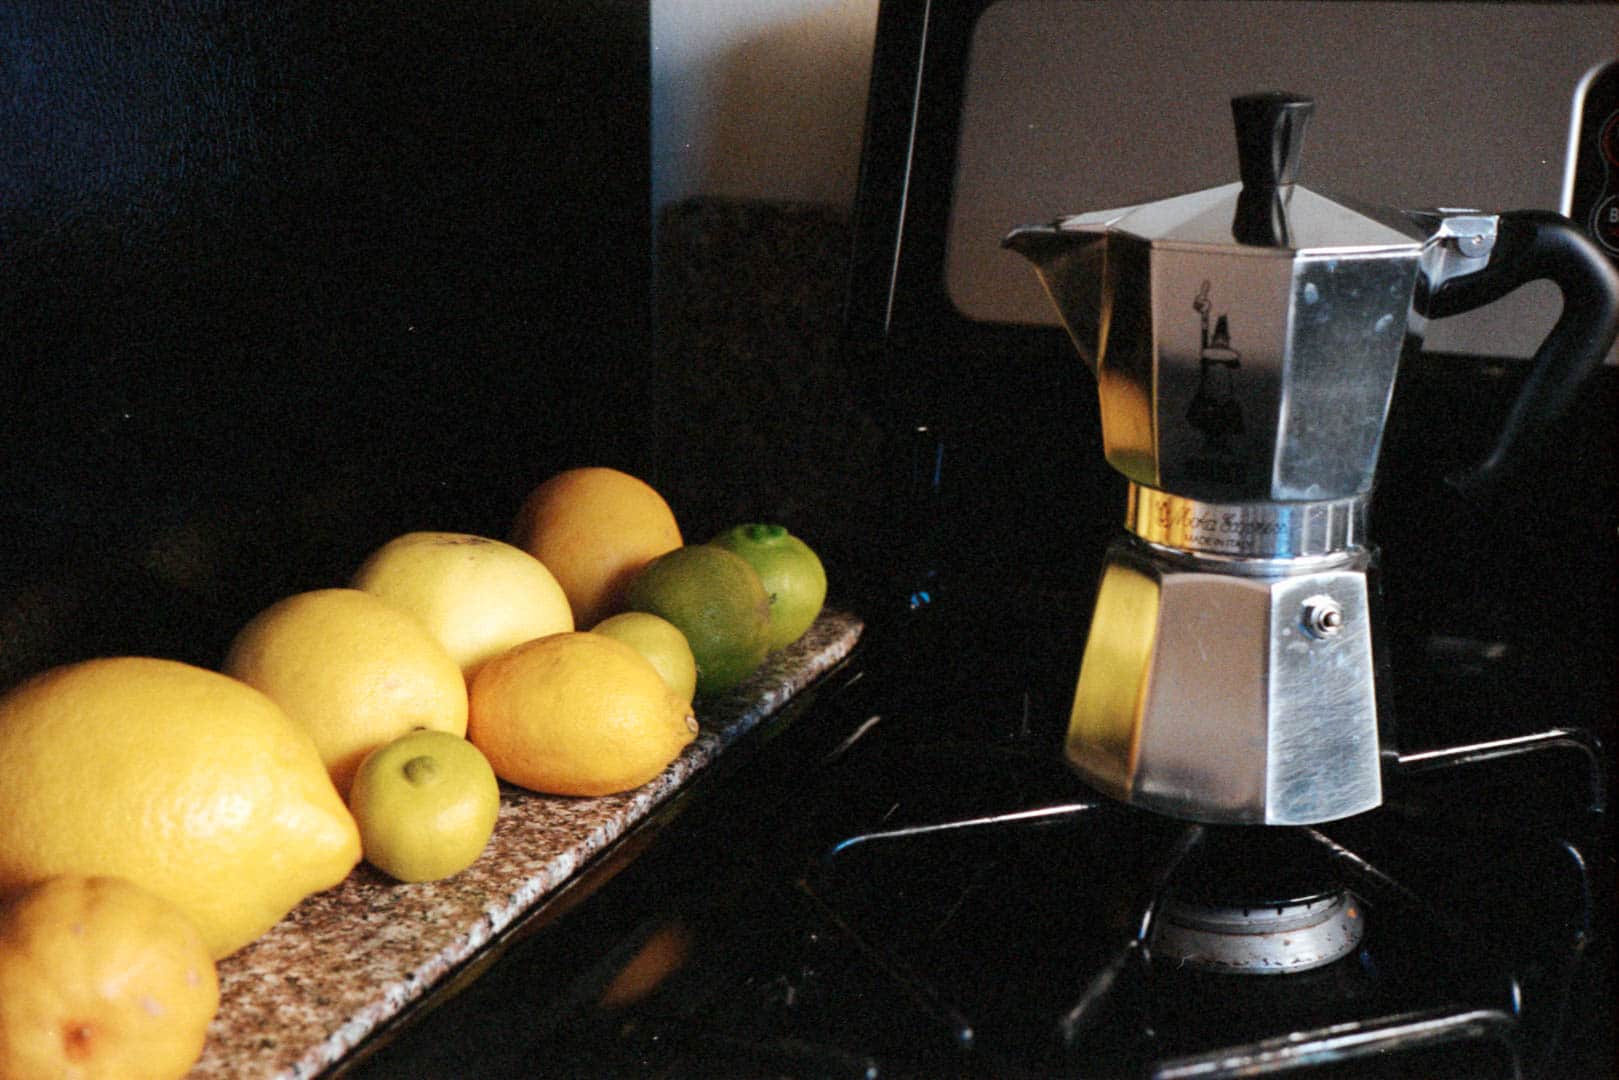 Lemons lined up alongside a stove with a coffee maker